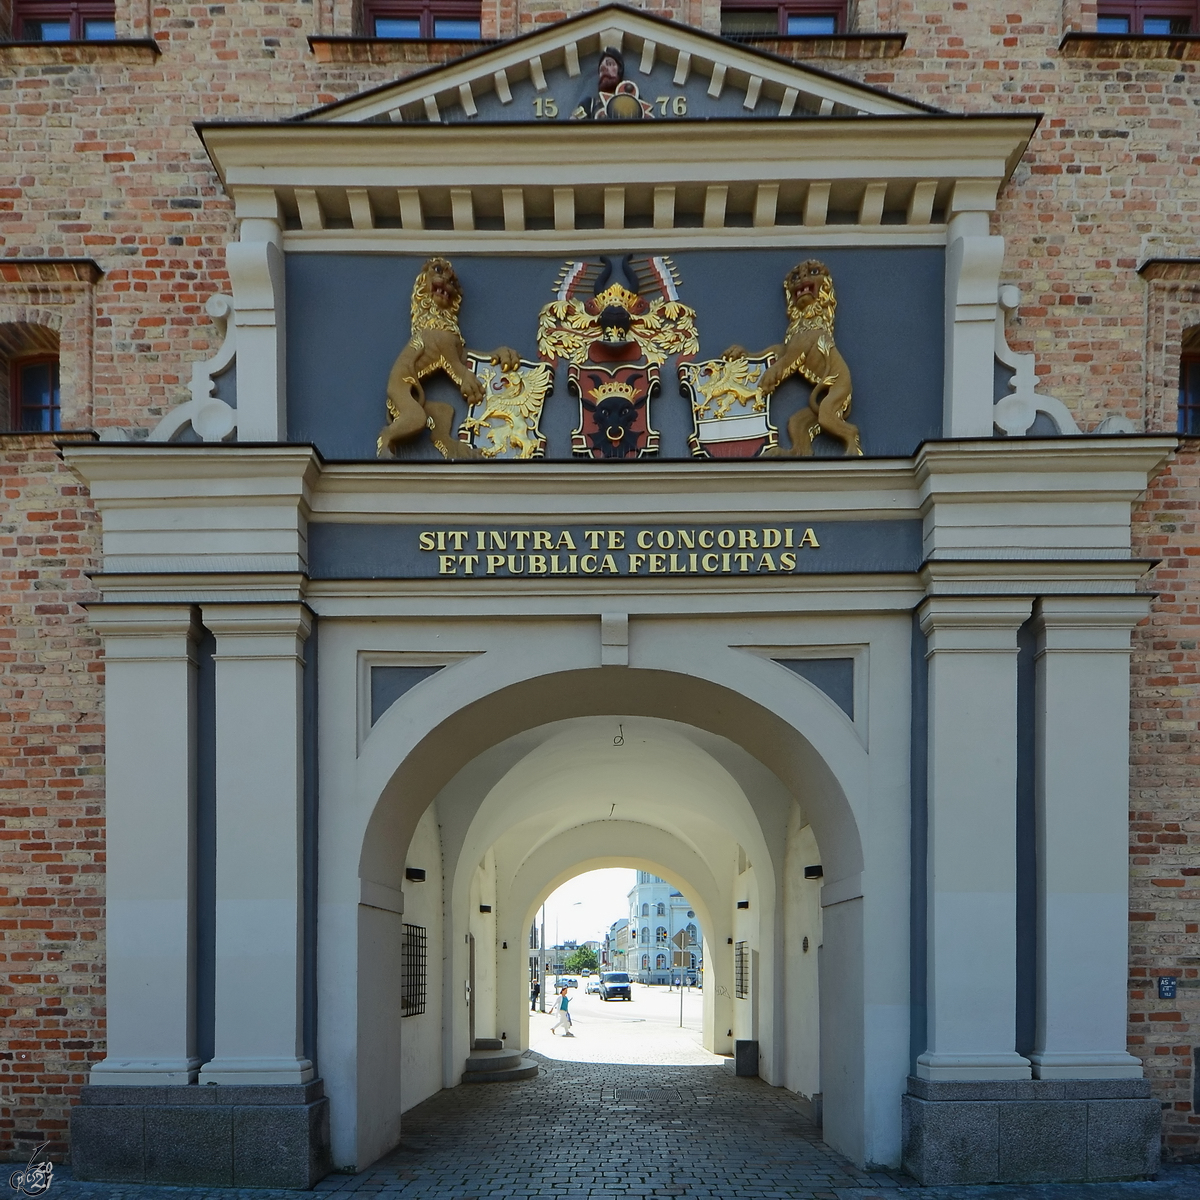 Das Portal des im Renaissance-Baustil errichteten Steintores in Rostock. (August 2013)